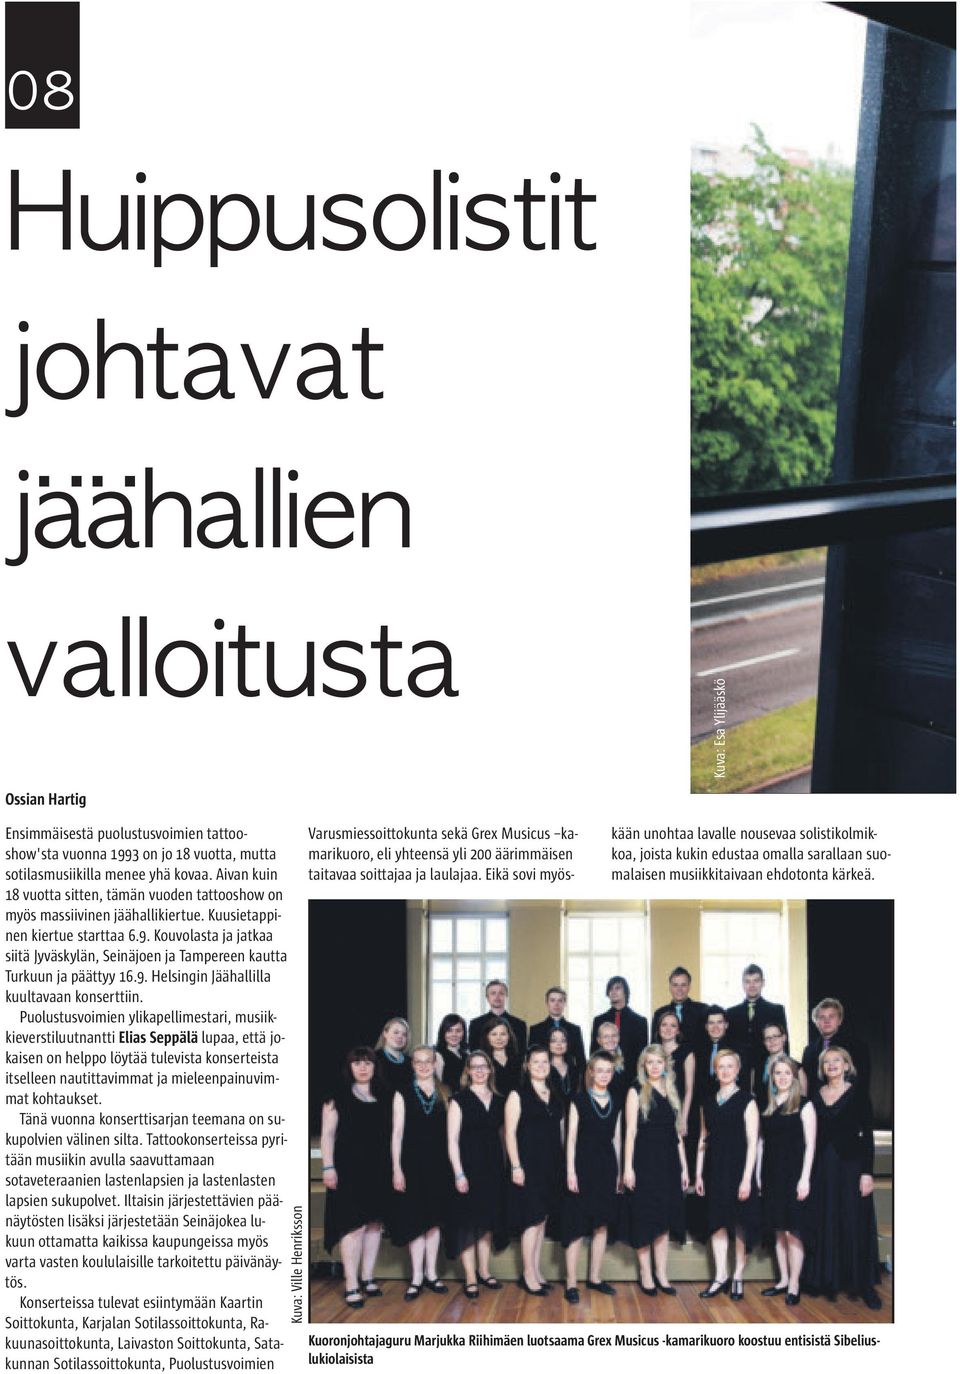 Kouvolasta ja jatkaa siitä Jyväskylän, Seinäjoen ja Tampereen kautta Turkuun ja päättyy 16.9. Helsingin Jäähallilla kuultavaan konserttiin.